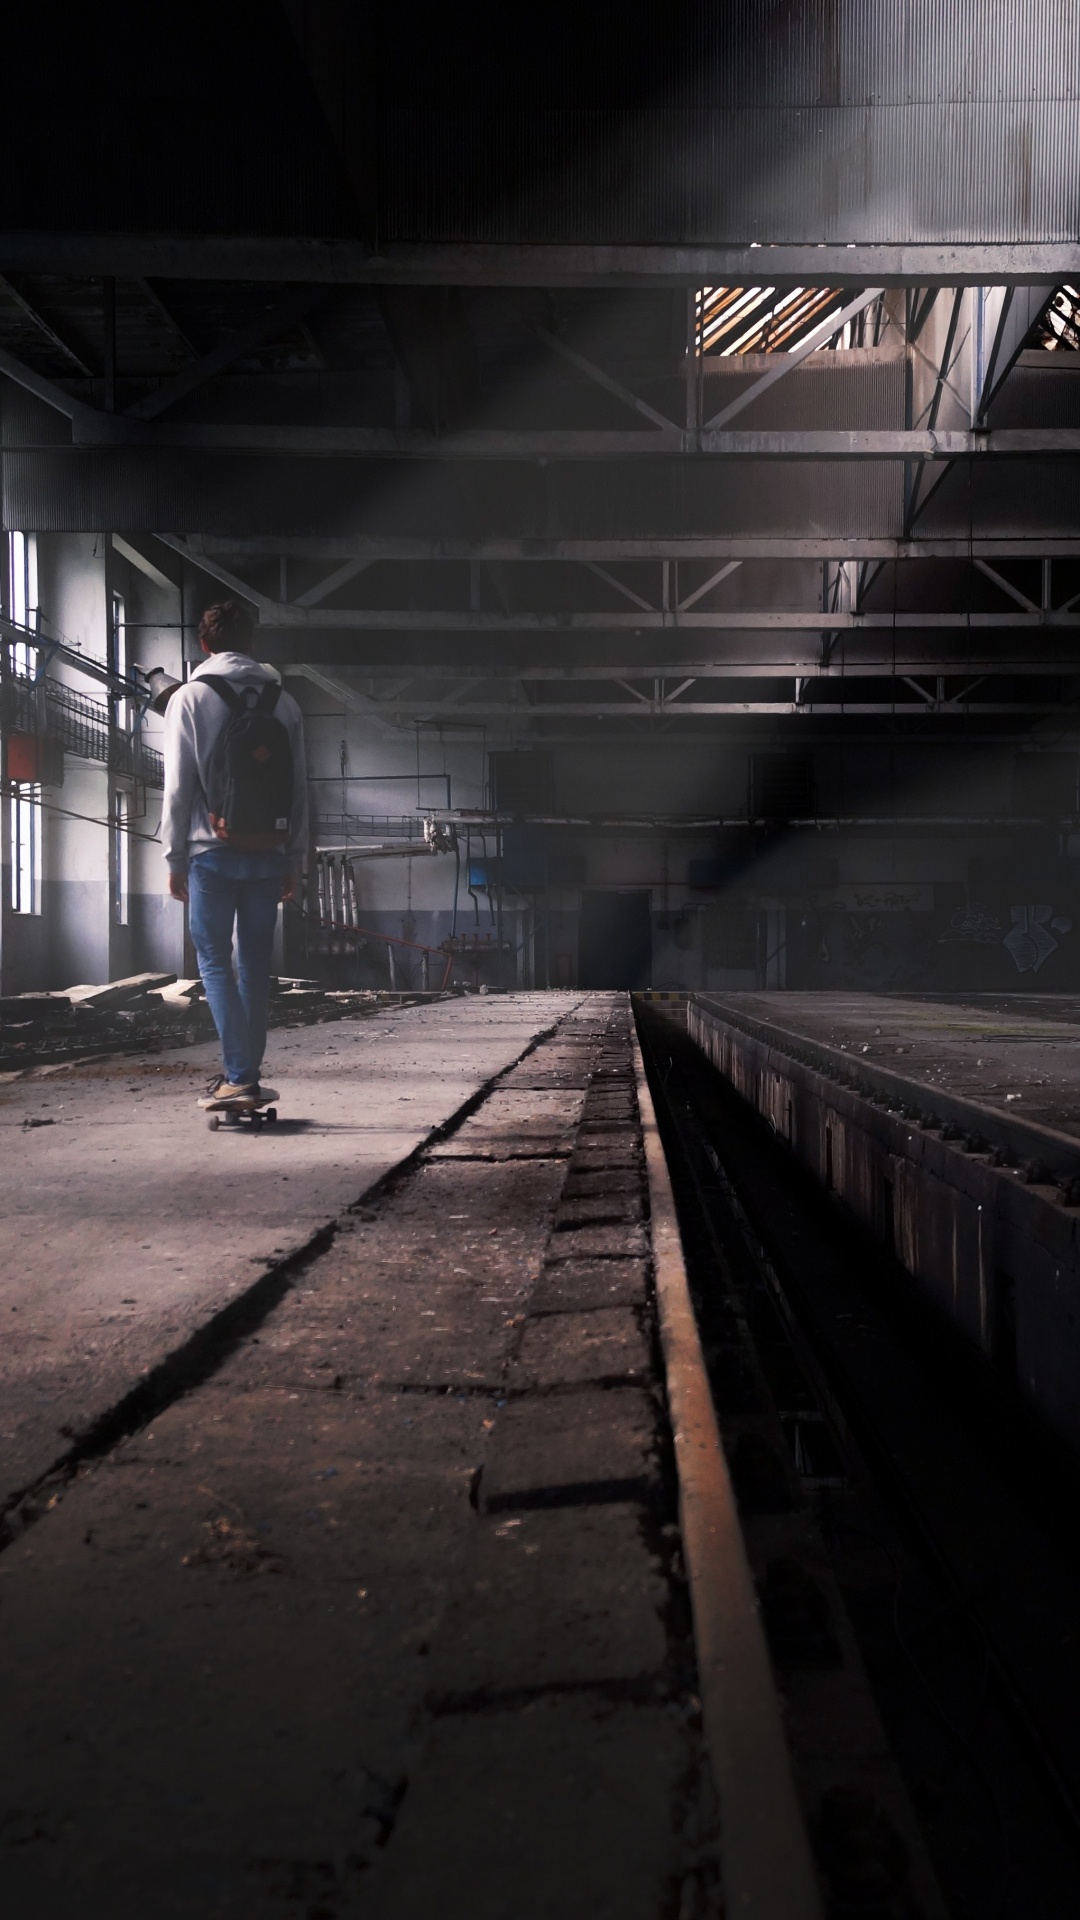 Man in Blue Denim Jeans Walking on Train Station. Wallpaper in 1080x1920 Resolution